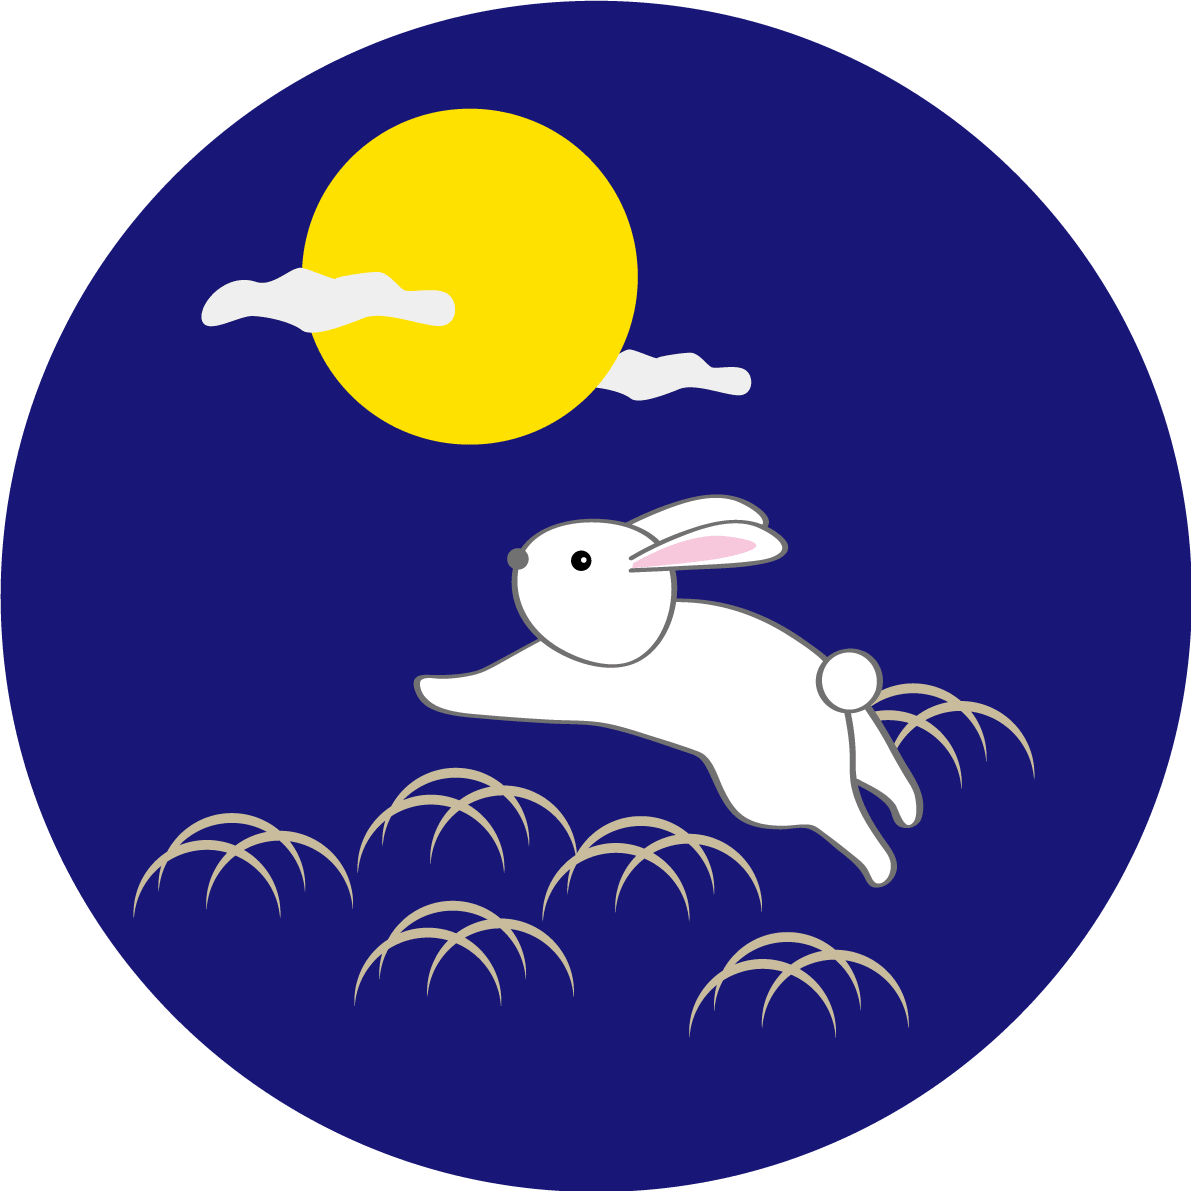 满月跳跃的兔子秋天赏月